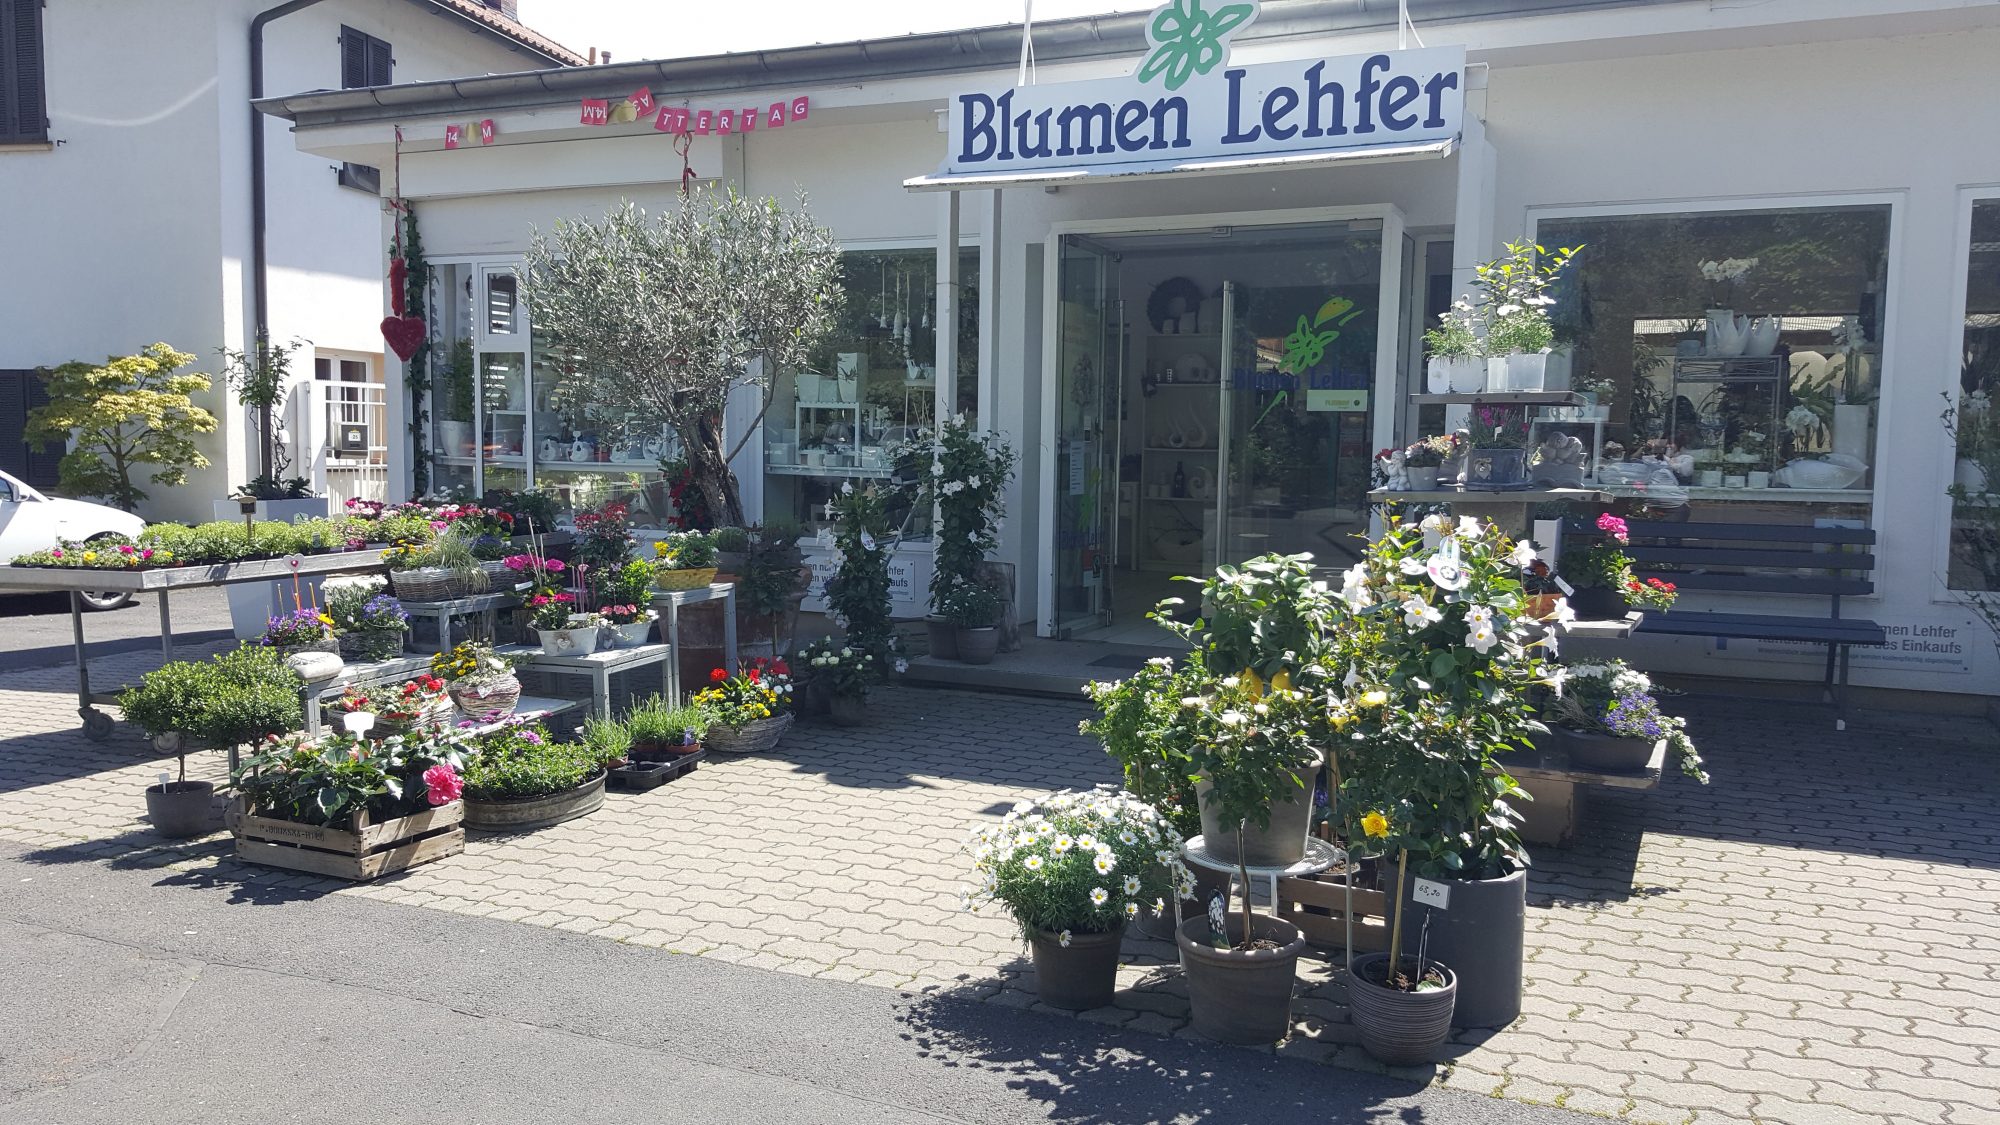 (c) Blumen-lehfer.de